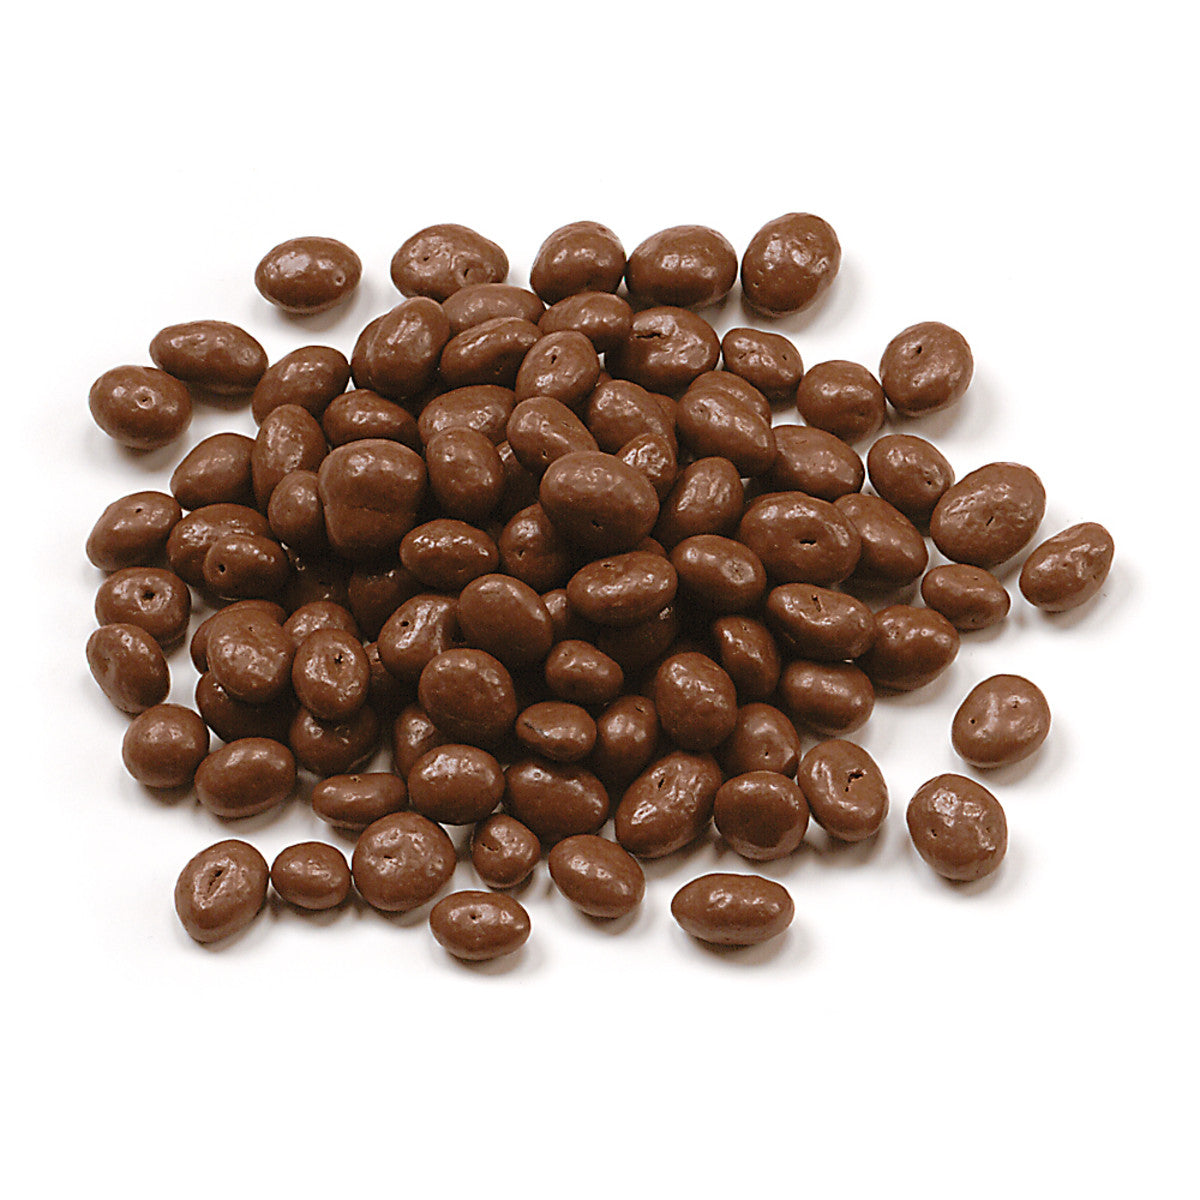 Chocolate covered raisins